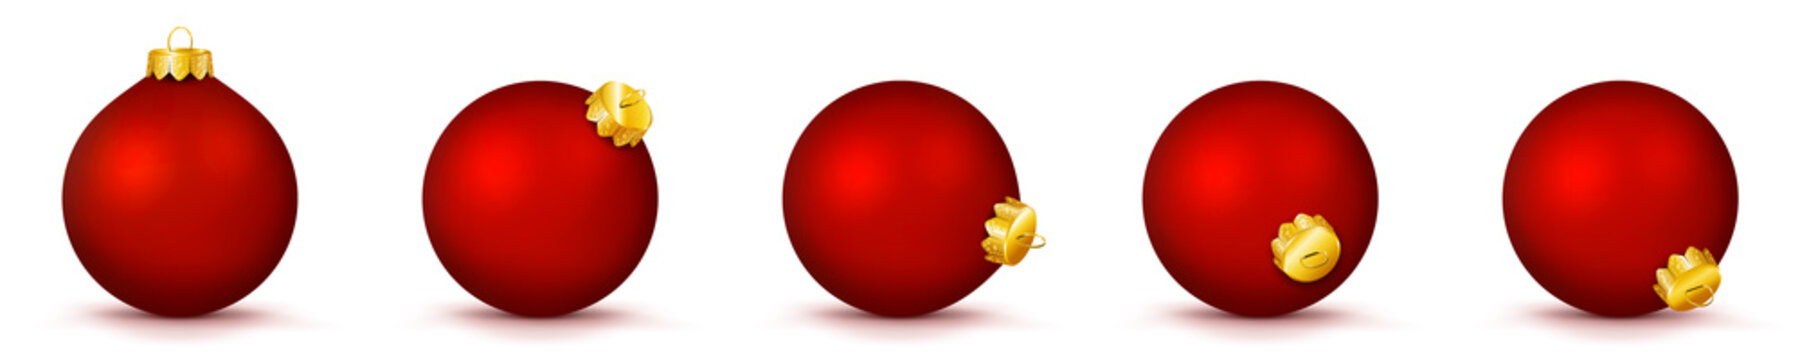 Vektor Weihnachtskugeln in rot - verschiedenen Perspektiven - Isoliert auf weißem Hintergrund - Jede Kugel ist gruppiert und mit weißer Hintergrund-Ebene - Set, Sammlung, Kollektion, Gruppierung